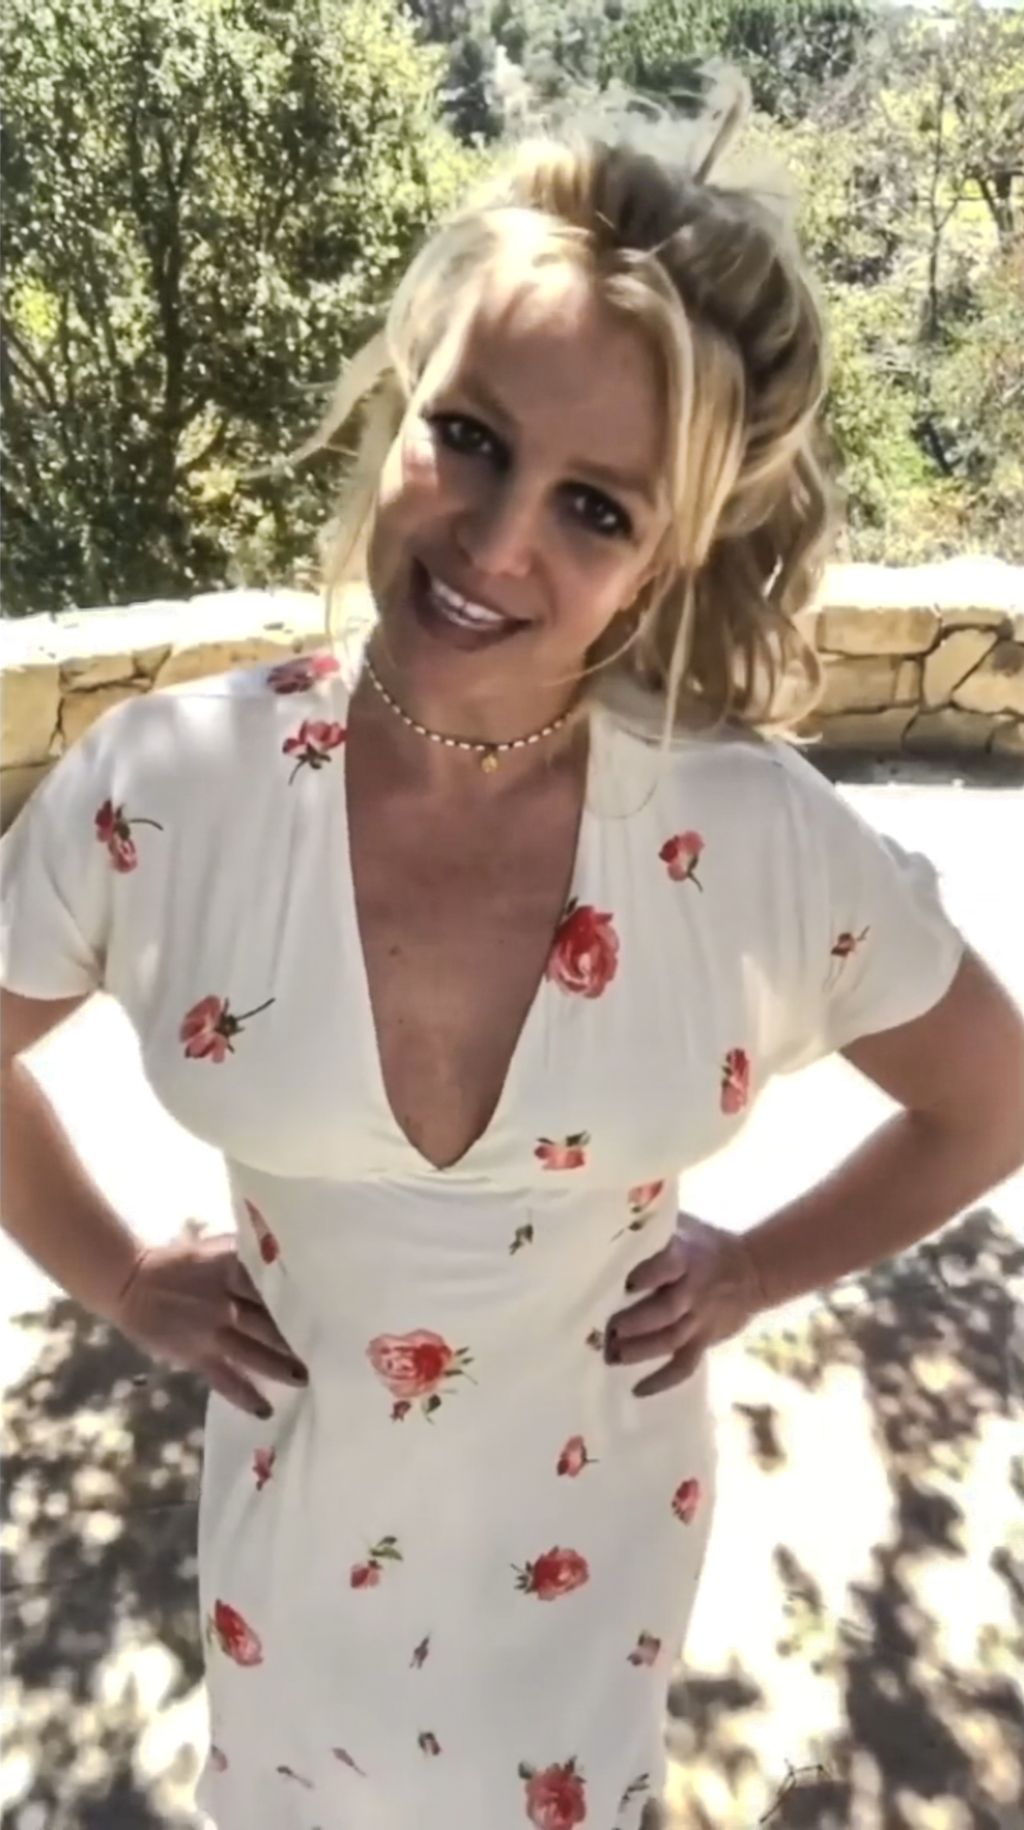 Britney Spears on social media